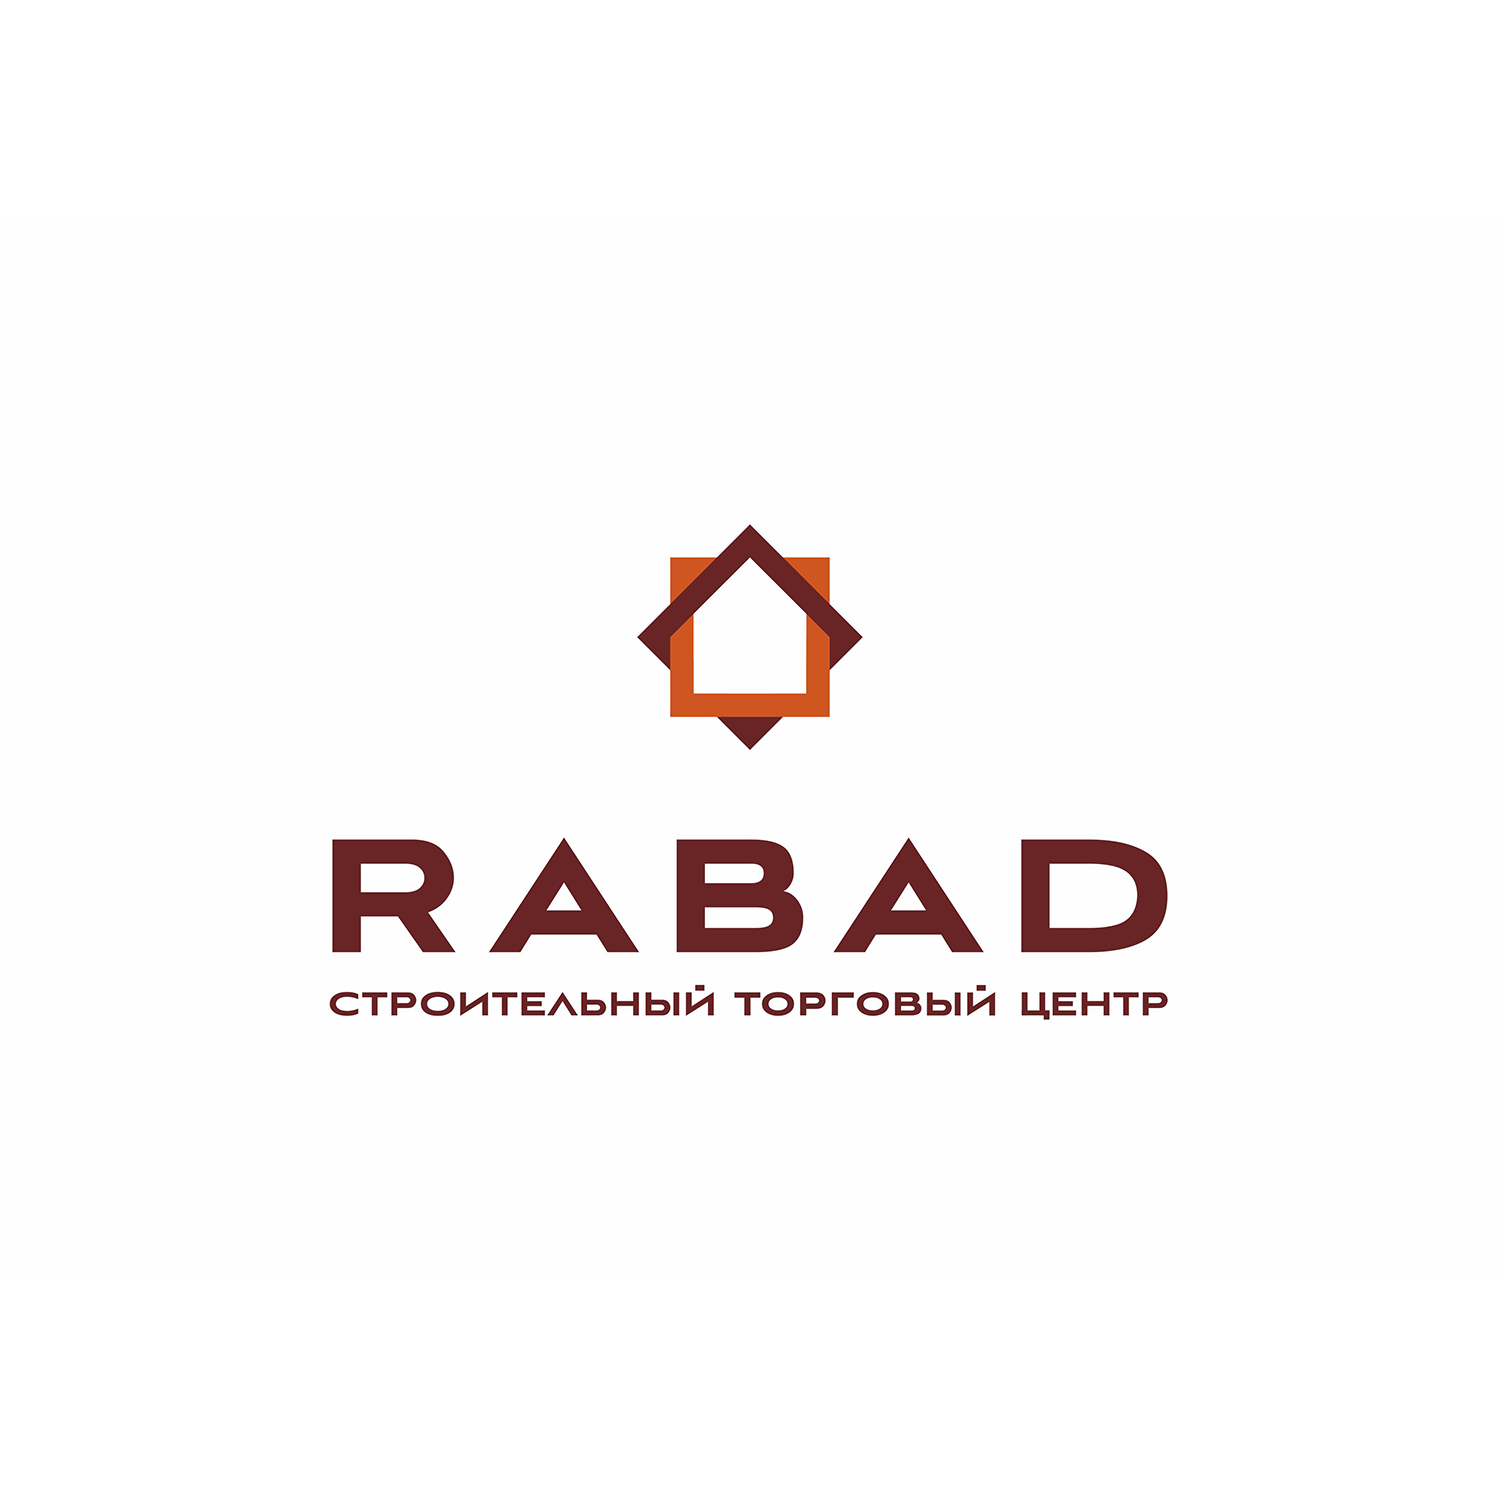 RABAD - строительный торговый центр